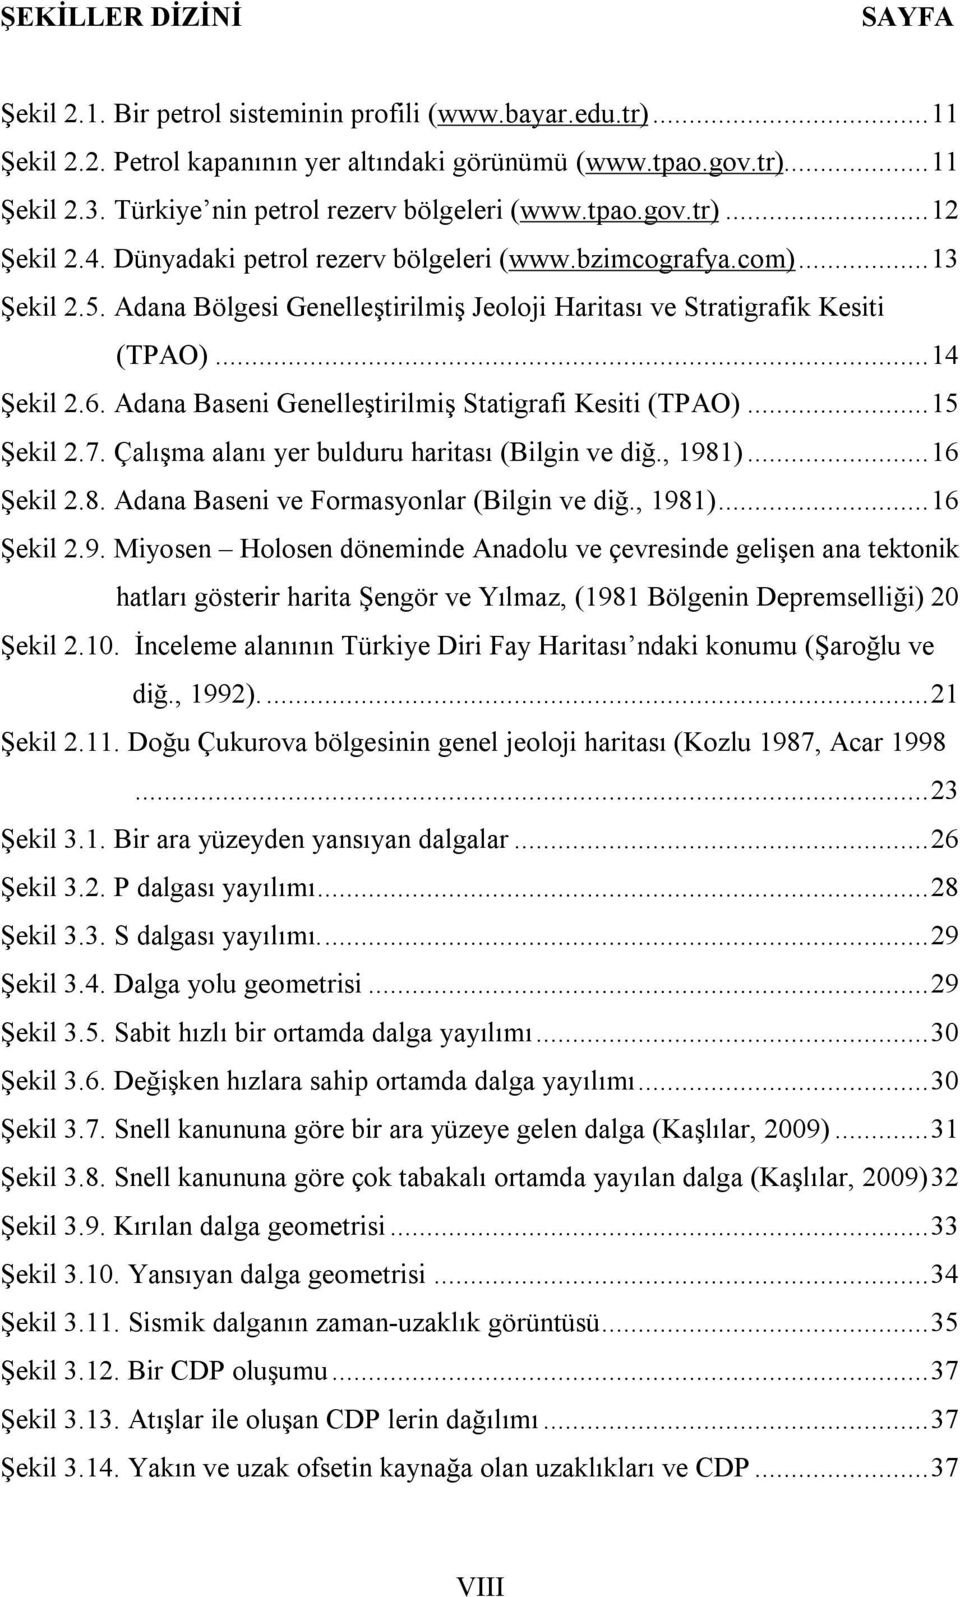 Adana Bölgesi Genelleştirilmiş Jeoloji Haritası ve Stratigrafik Kesiti (TPAO)... 14 Şekil 2.6. Adana Baseni Genelleştirilmiş Statigrafi Kesiti (TPAO)... 15 Şekil 2.7.